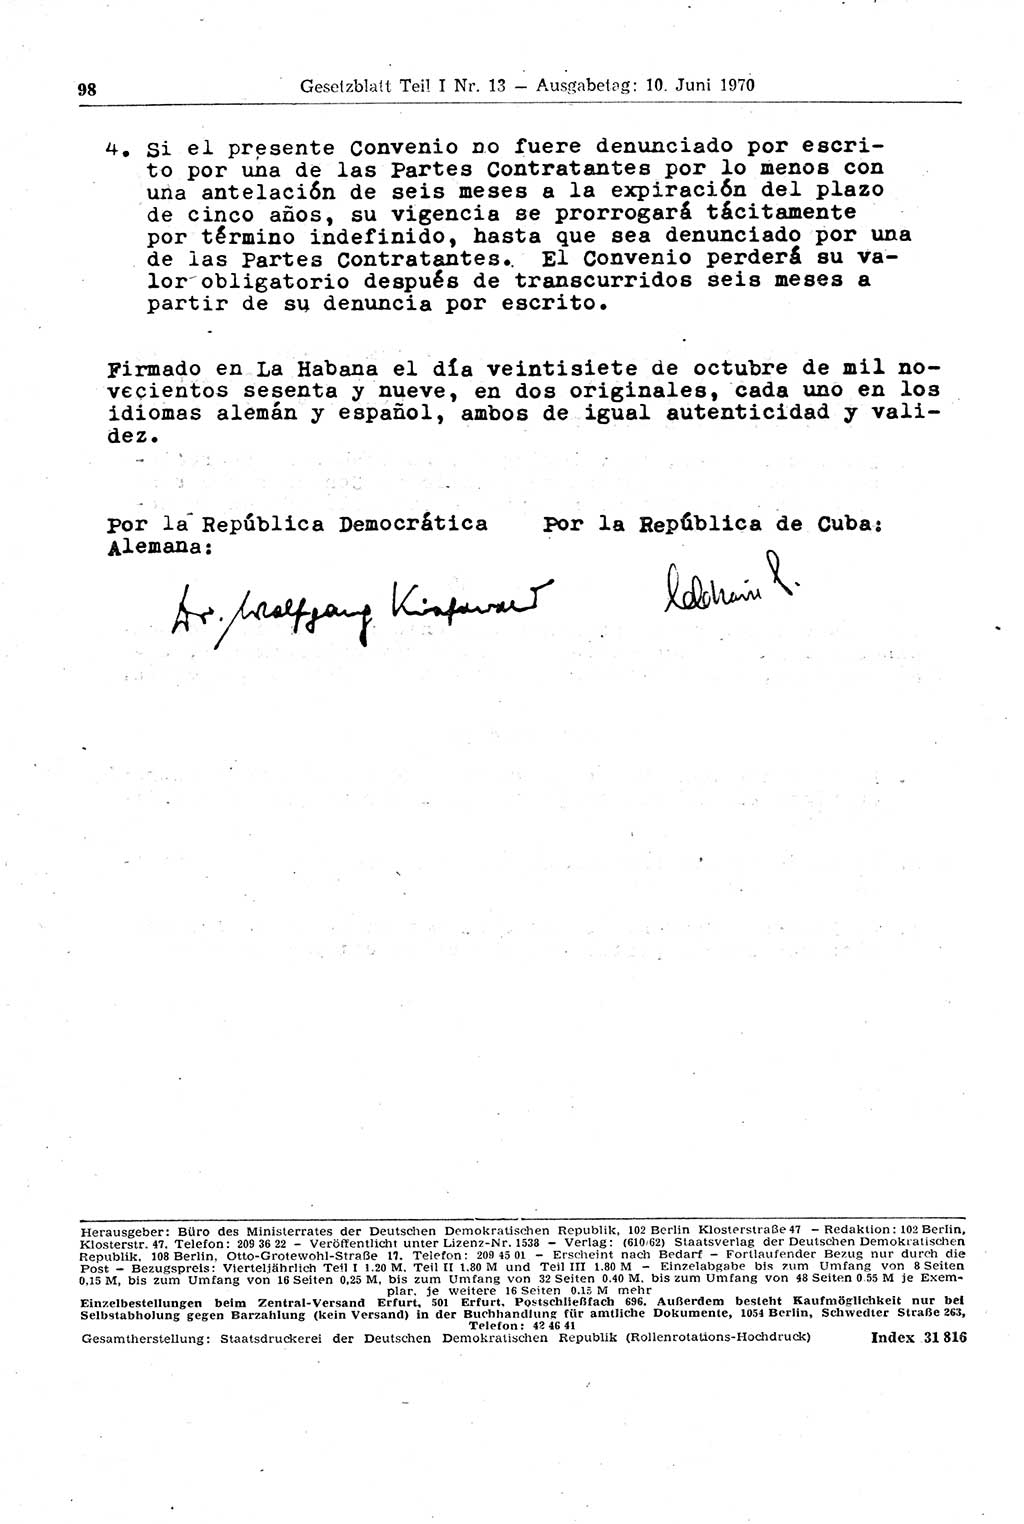 Gesetzblatt (GBl.) der Deutschen Demokratischen Republik (DDR) Teil Ⅰ 1970, Seite 98 (GBl. DDR Ⅰ 1970, S. 98)